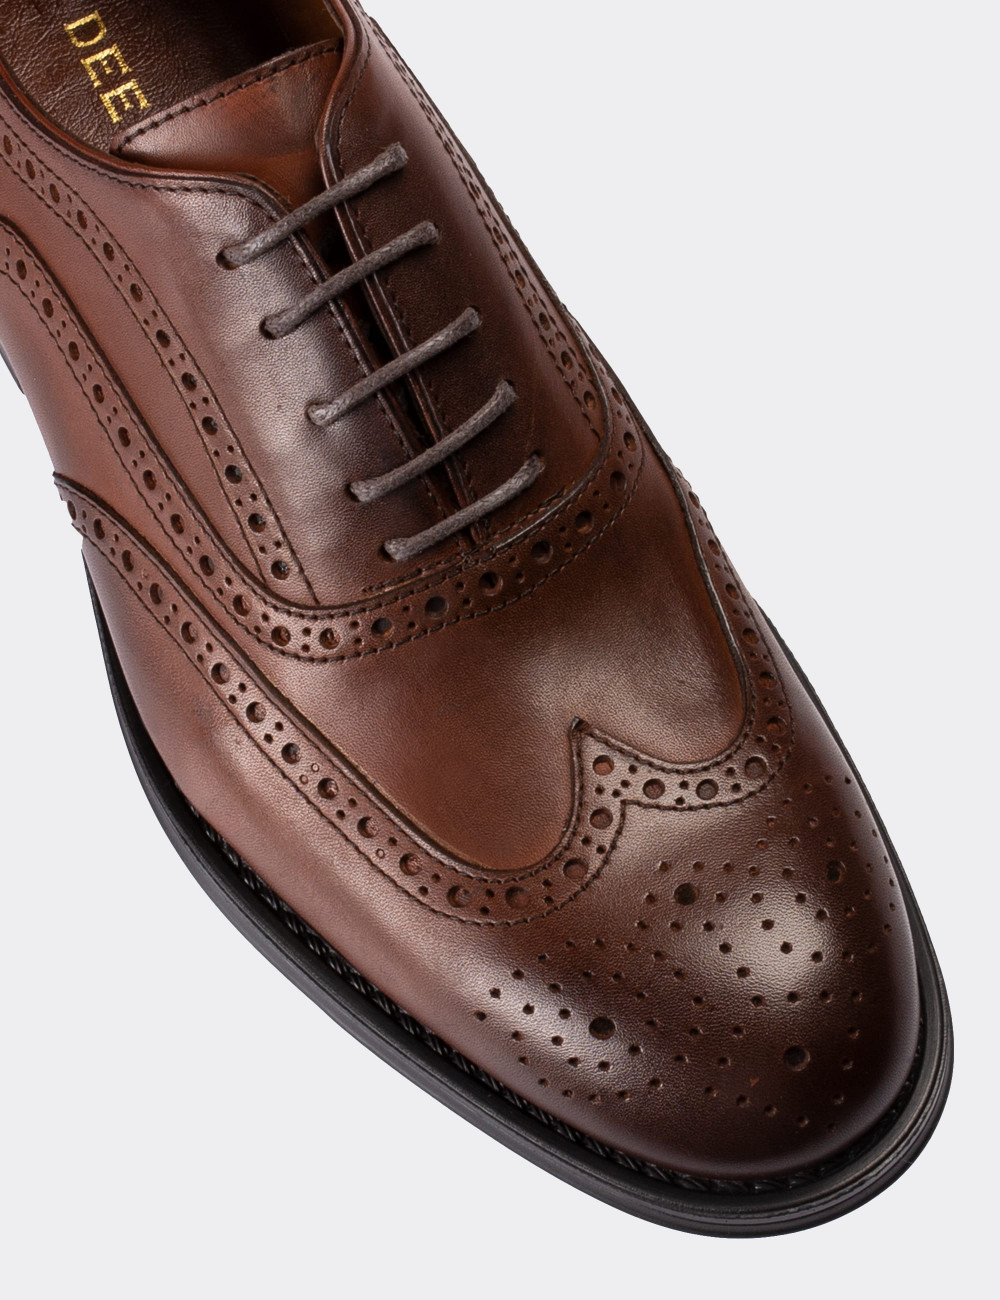 Hakiki Deri Kahverengi Klasik Erkek Ayakkabı - 01511MKHVC01